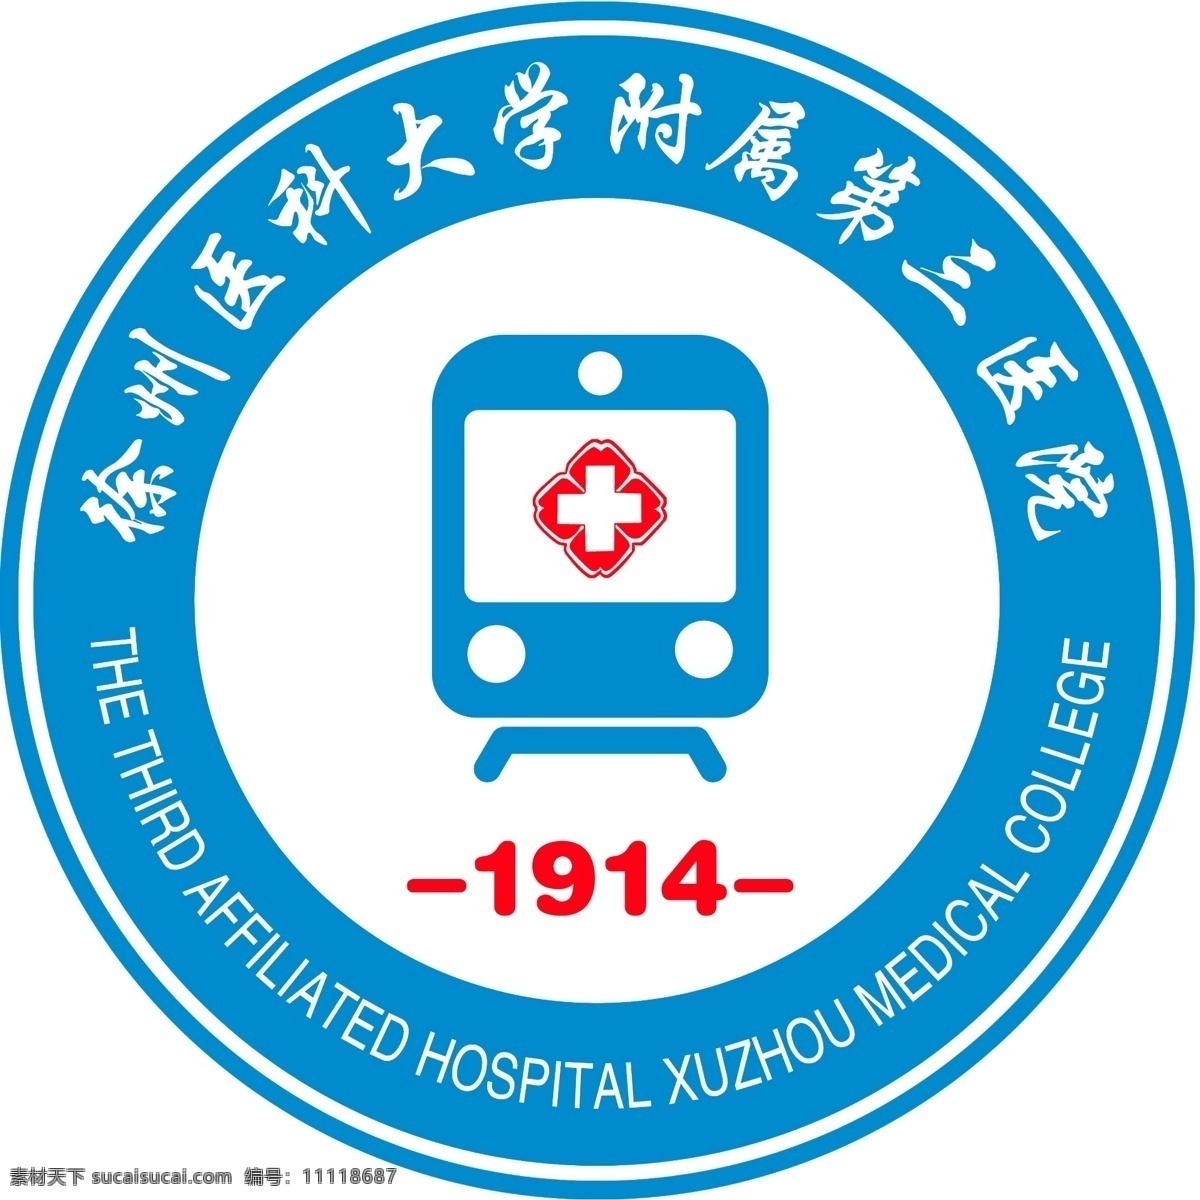 院 标 火车头 医院 院标 图标 红十字 院徽 圆环 弧形文字 蓝色 简约 大气 白色